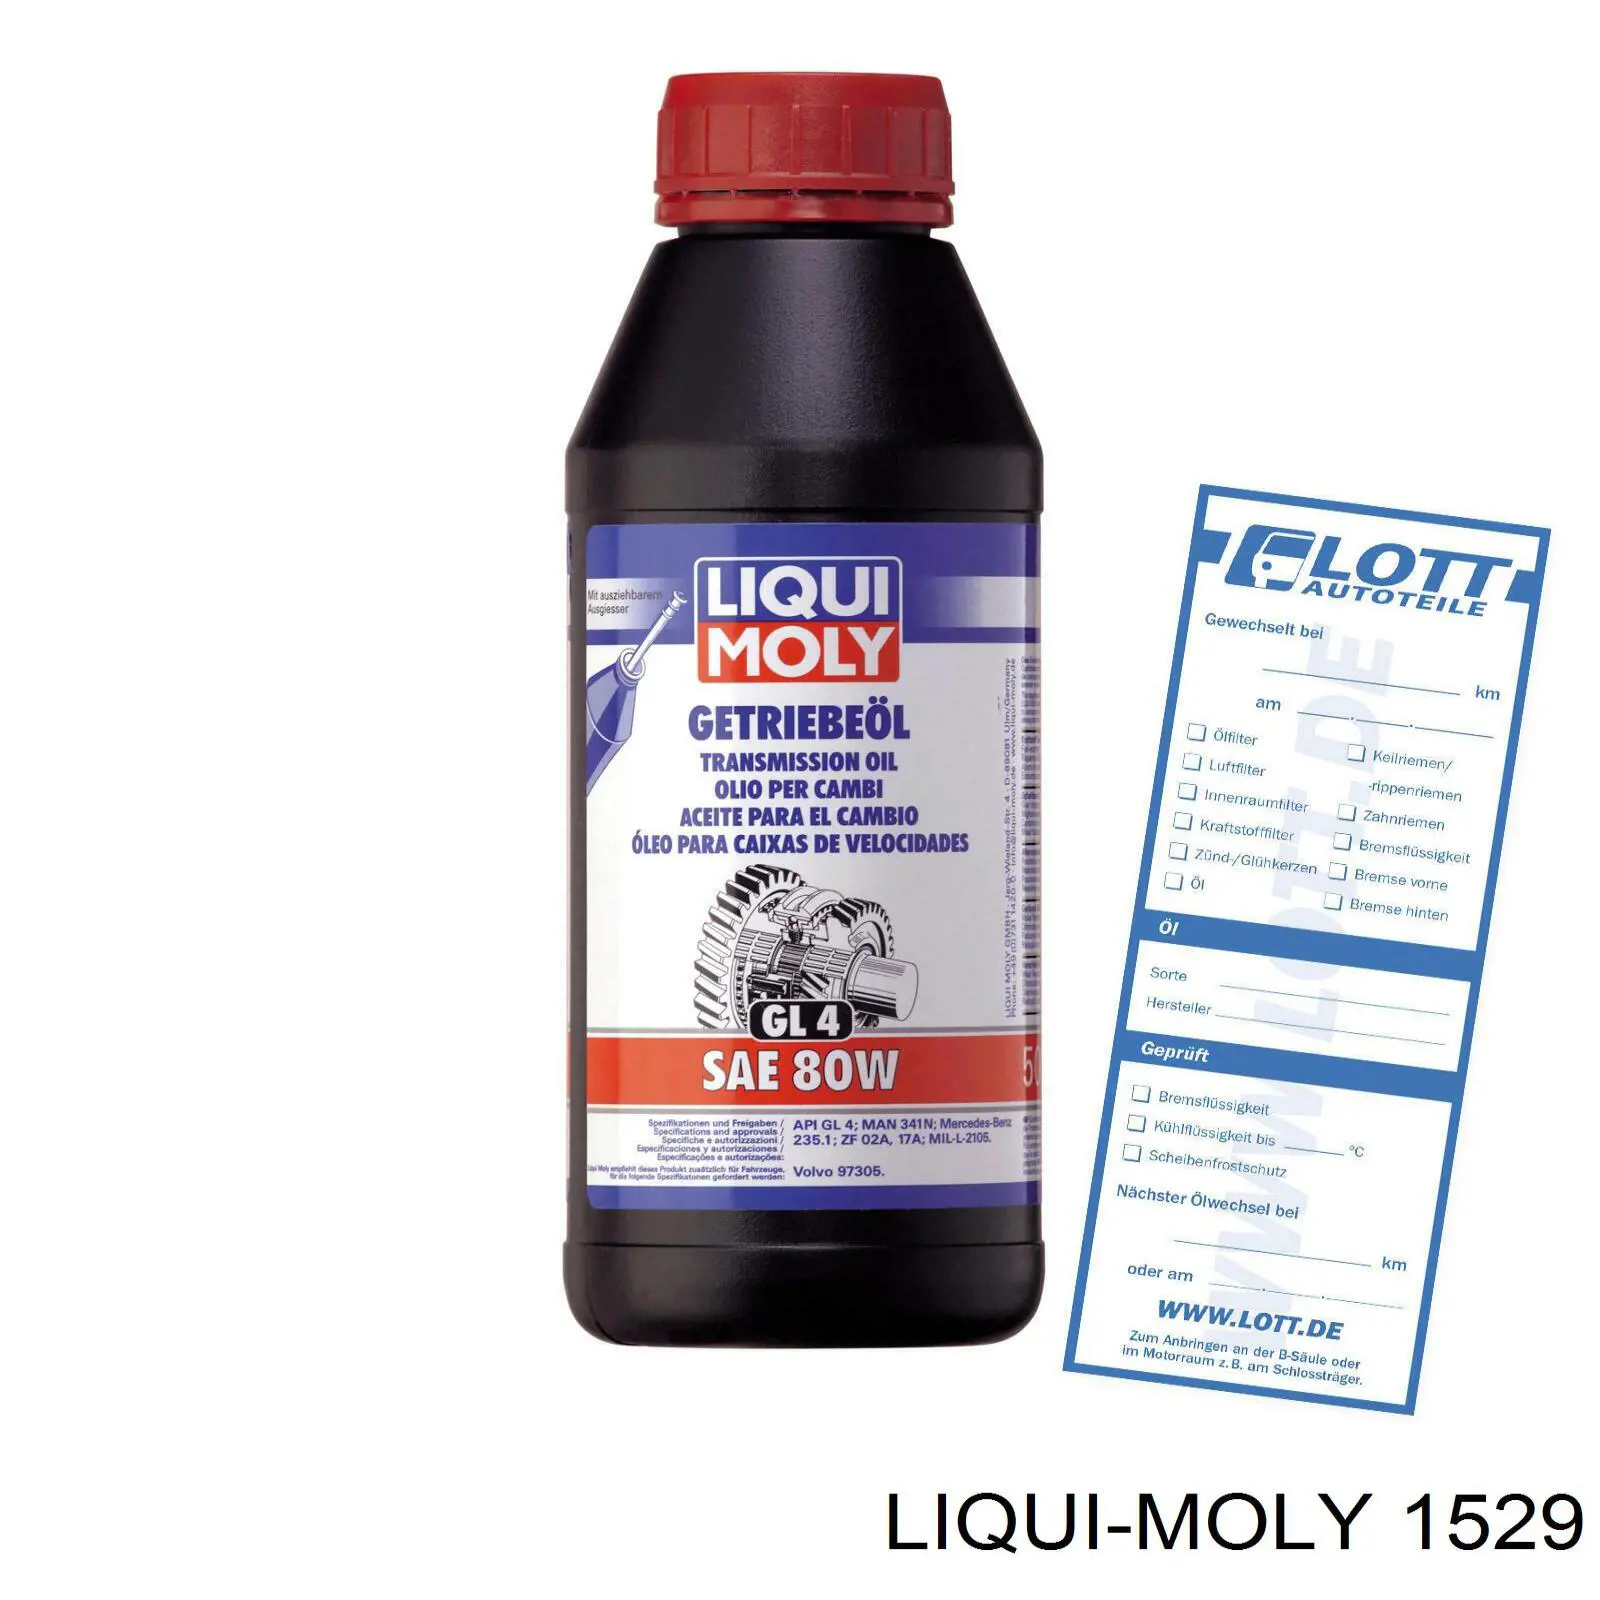 1529 Liqui Moly очиститель хрома Очиститель-защита хрома, 0.25л